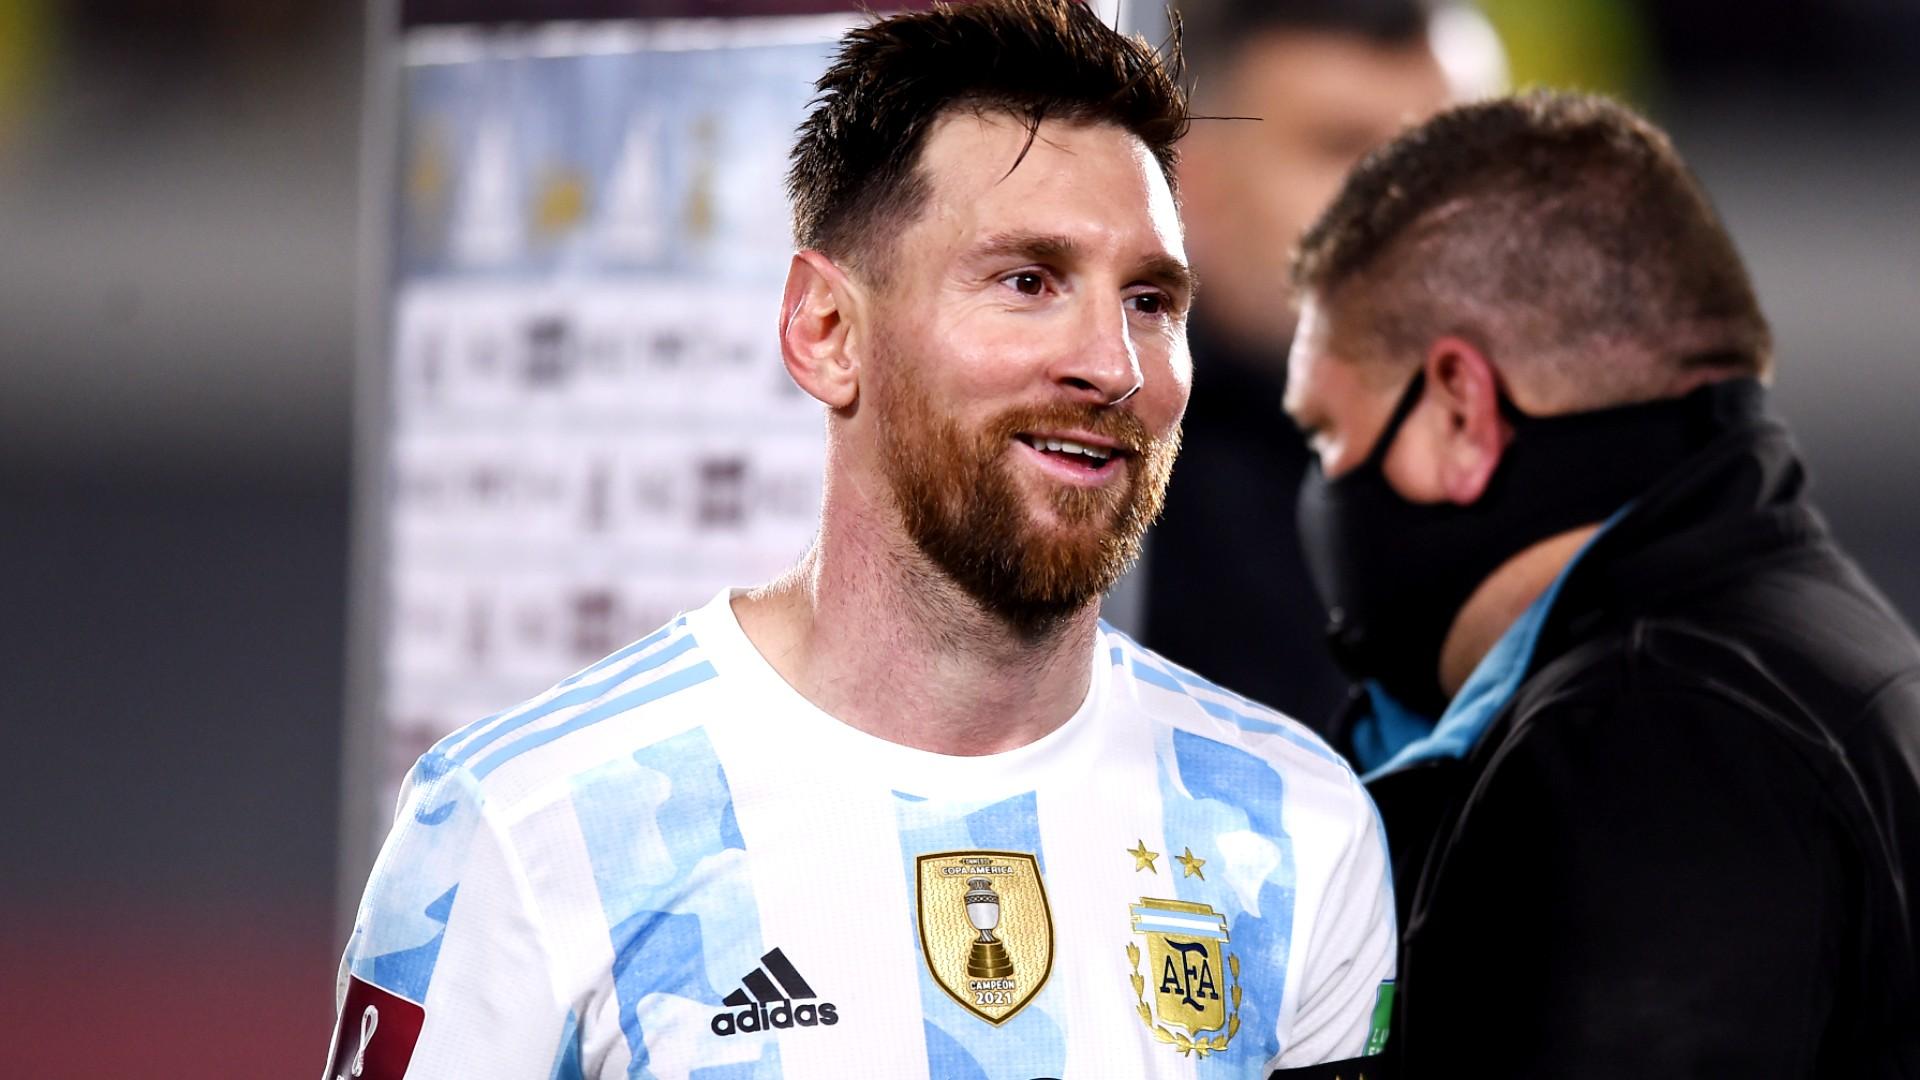 Messi Argentina của đội tuyển quốc gia - đó chính là người hiện đang giữ kỷ lục 6 lần giành Quả bóng vàng FIFA. Siêu sao này đã ghi dấu ấn lịch sử trong ngành bóng đá và hình ảnh của anh ấy tại Argentina là những tác phẩm mới nhất, cập nhật nhất của chúng tôi. Hãy kiểm tra và thưởng thức ngay!